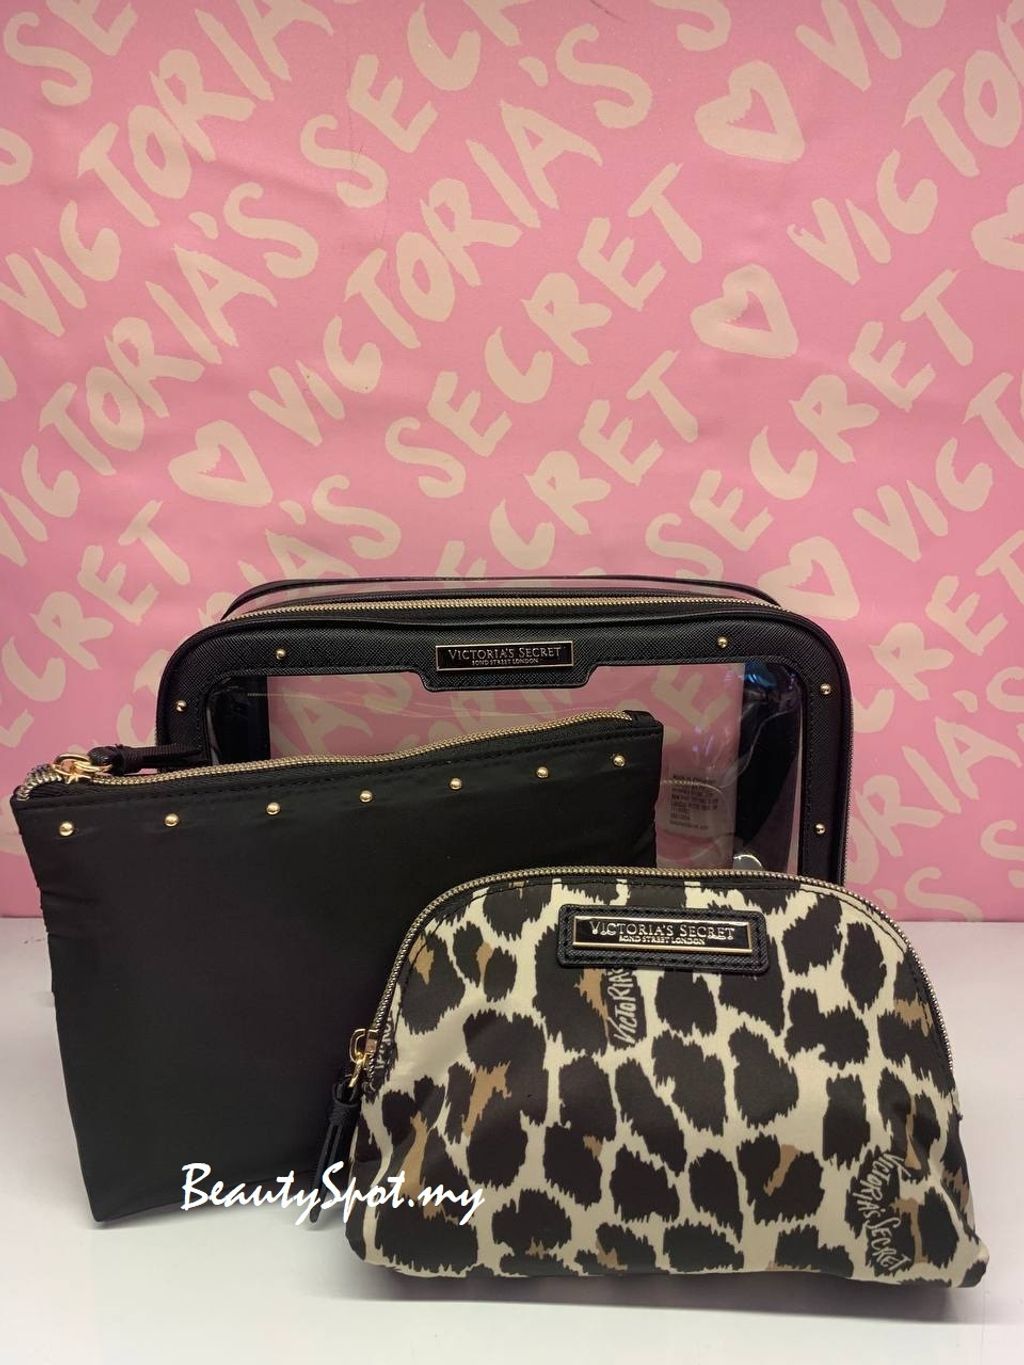 Victoria's Secret, Bags, Victorias Secret Cheetah Print Pink And Black  Duffel Bag